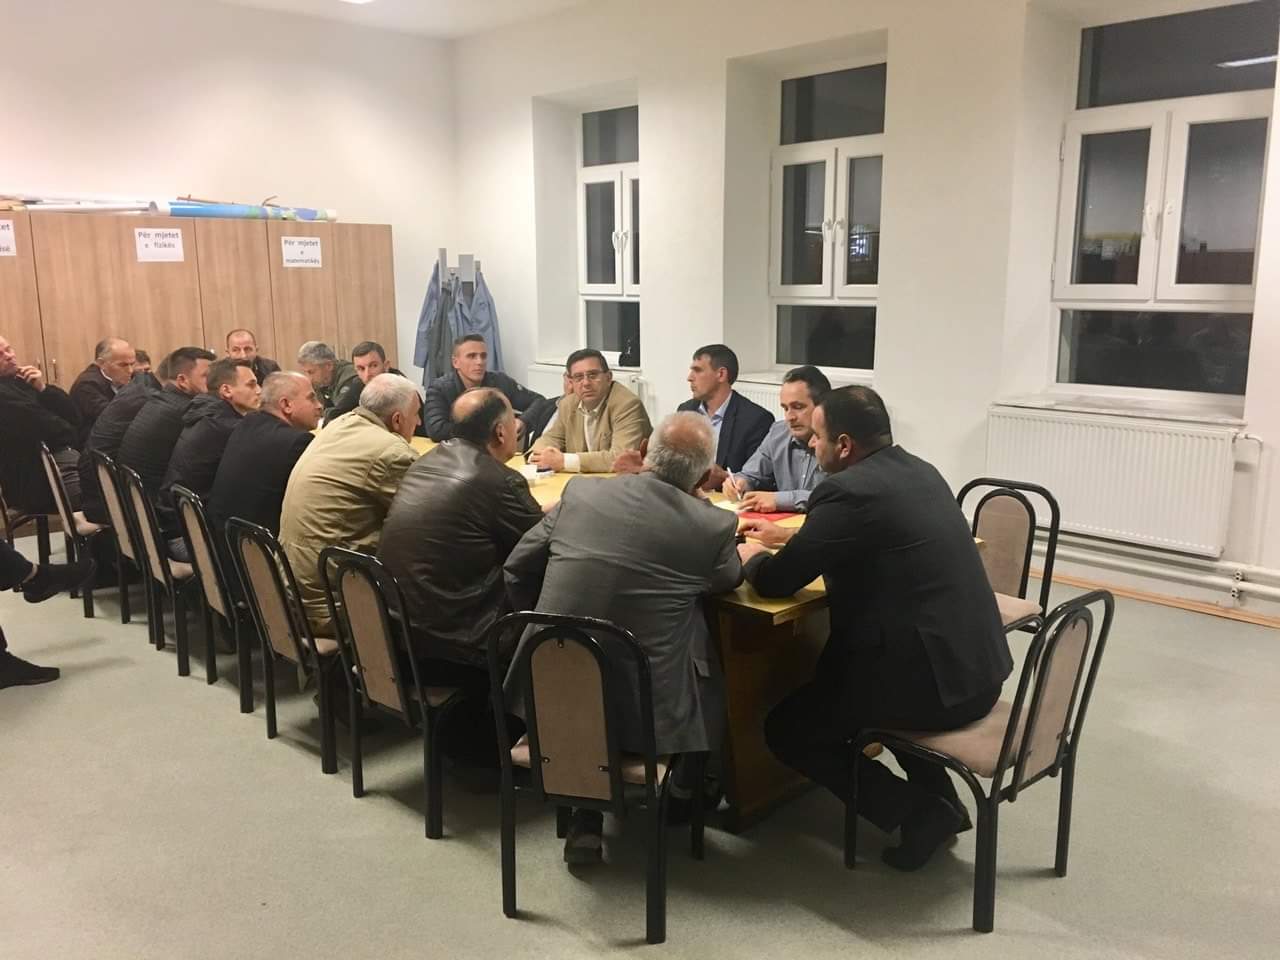 PDK dega në Sharr fillon takimet konsultative me nëndegetë të komunës së Dragashit